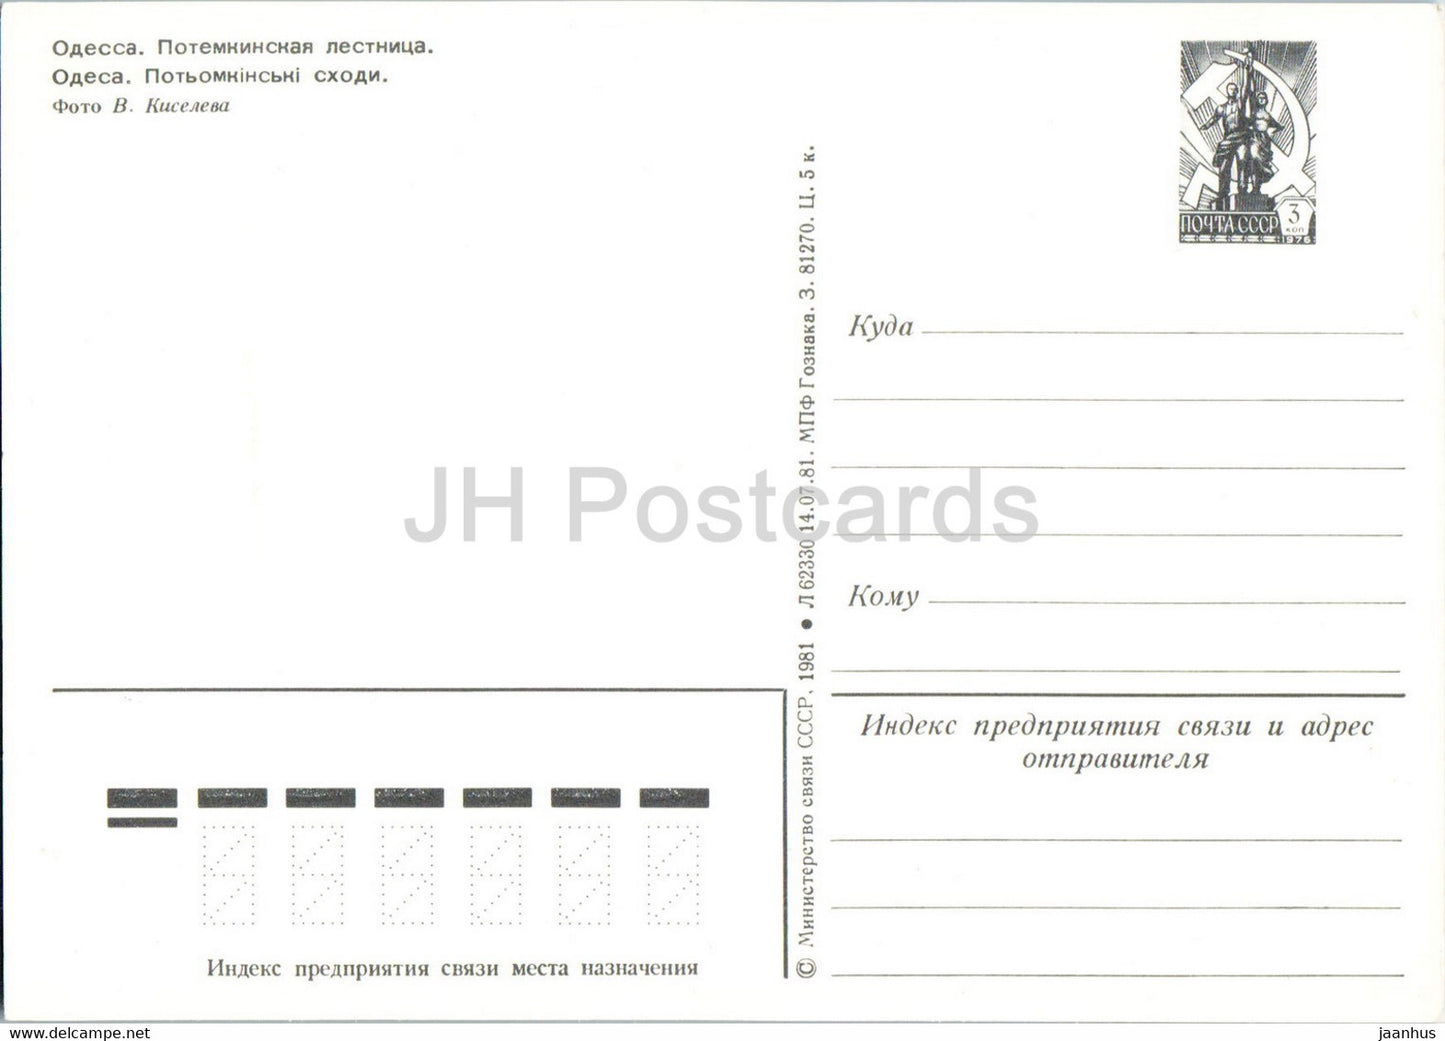 Odessa - Potemkin Stairs - postal stationery - 1981 - Ukraine USSR - unused